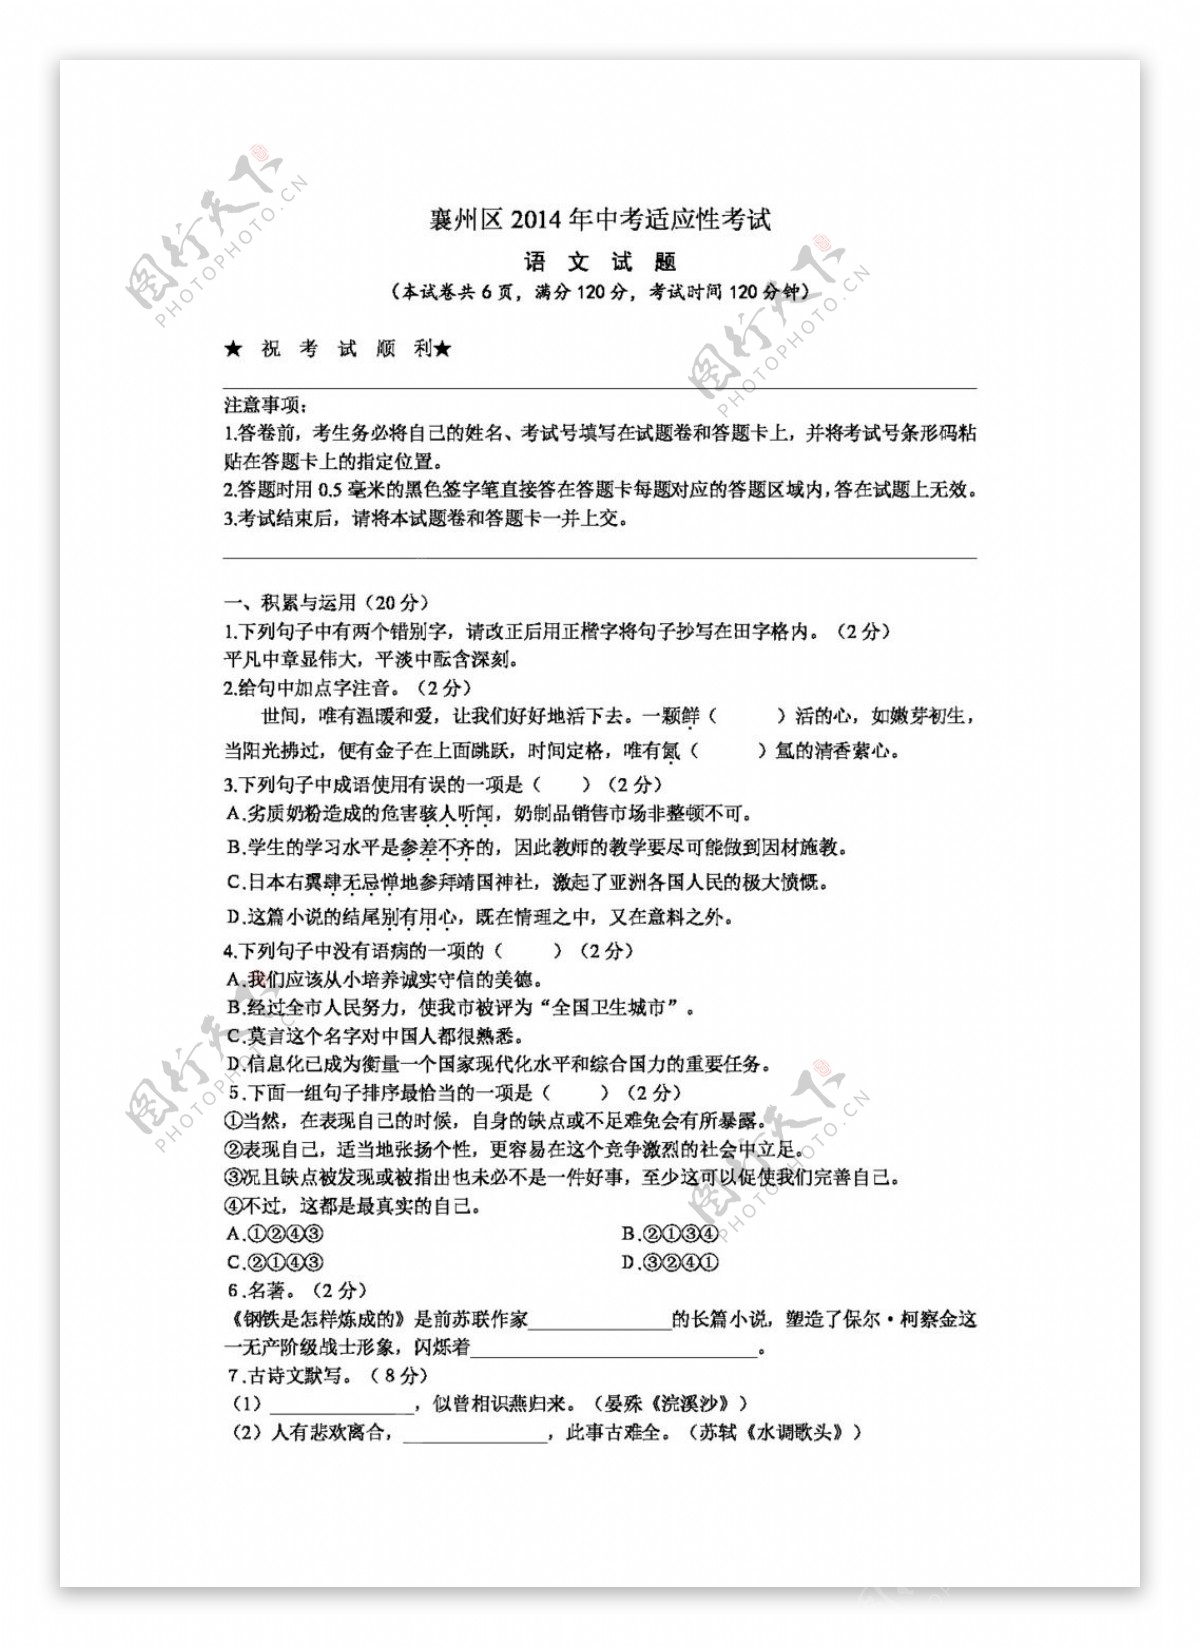 语文苏教版襄州区中考适应性考试语文试题